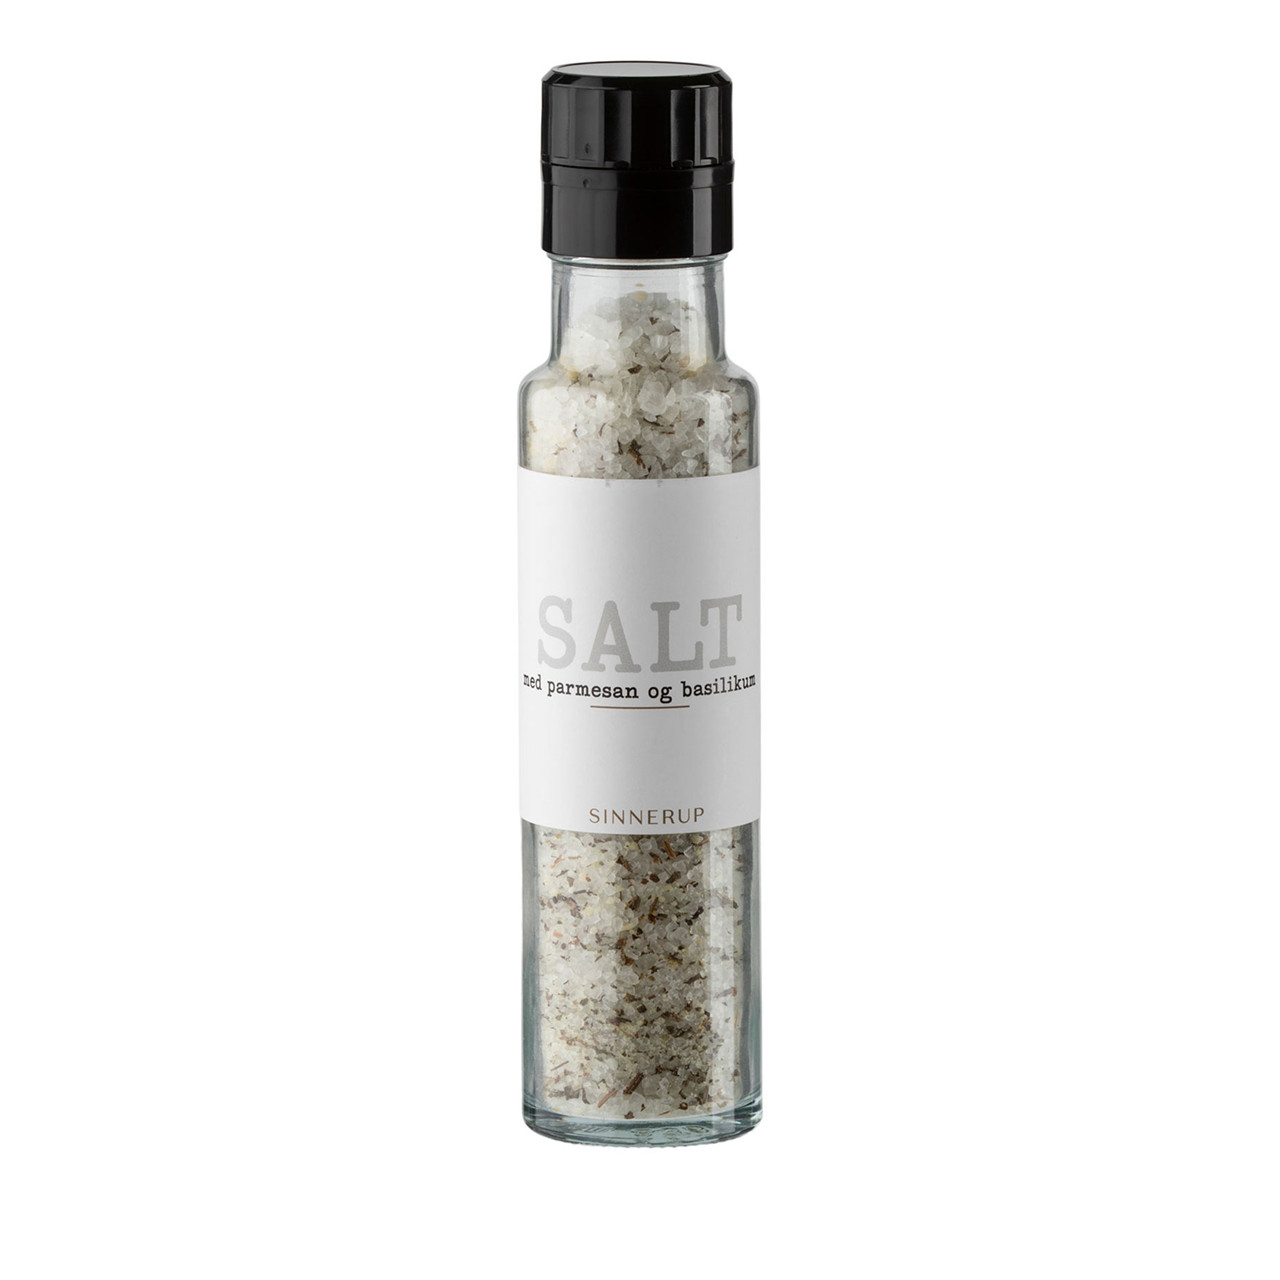 SINNERUP Appétit Salt med parmesan og basilikum (TRANSPARENT ONESIZE)